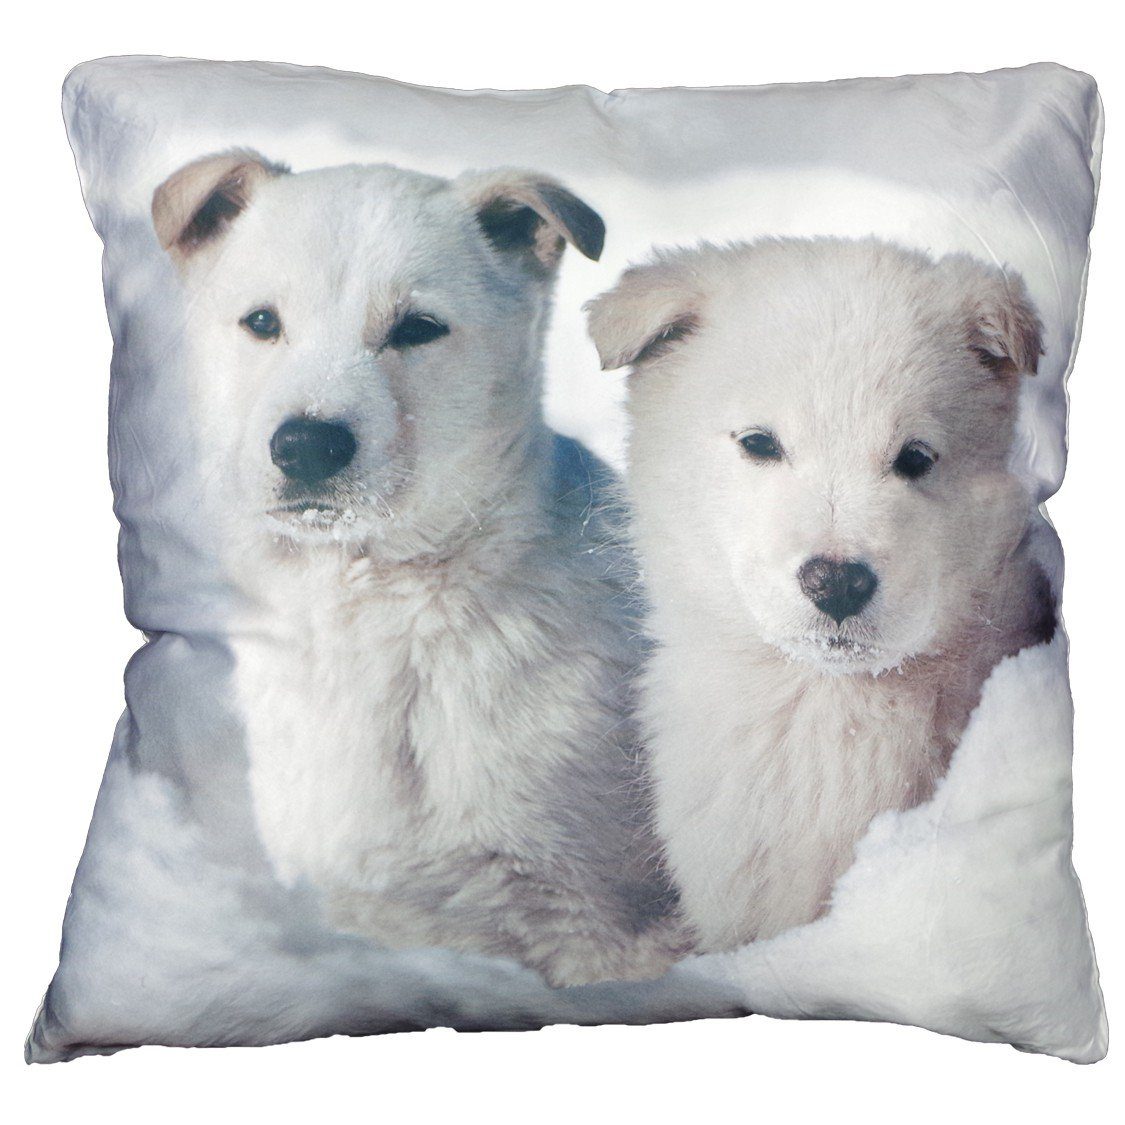 VIVA Home Dekokissen Couchkissen weißer Schäferhund Welpe als Dekokissen Tierkissen 45x45cm, realistisches Fotomotiv